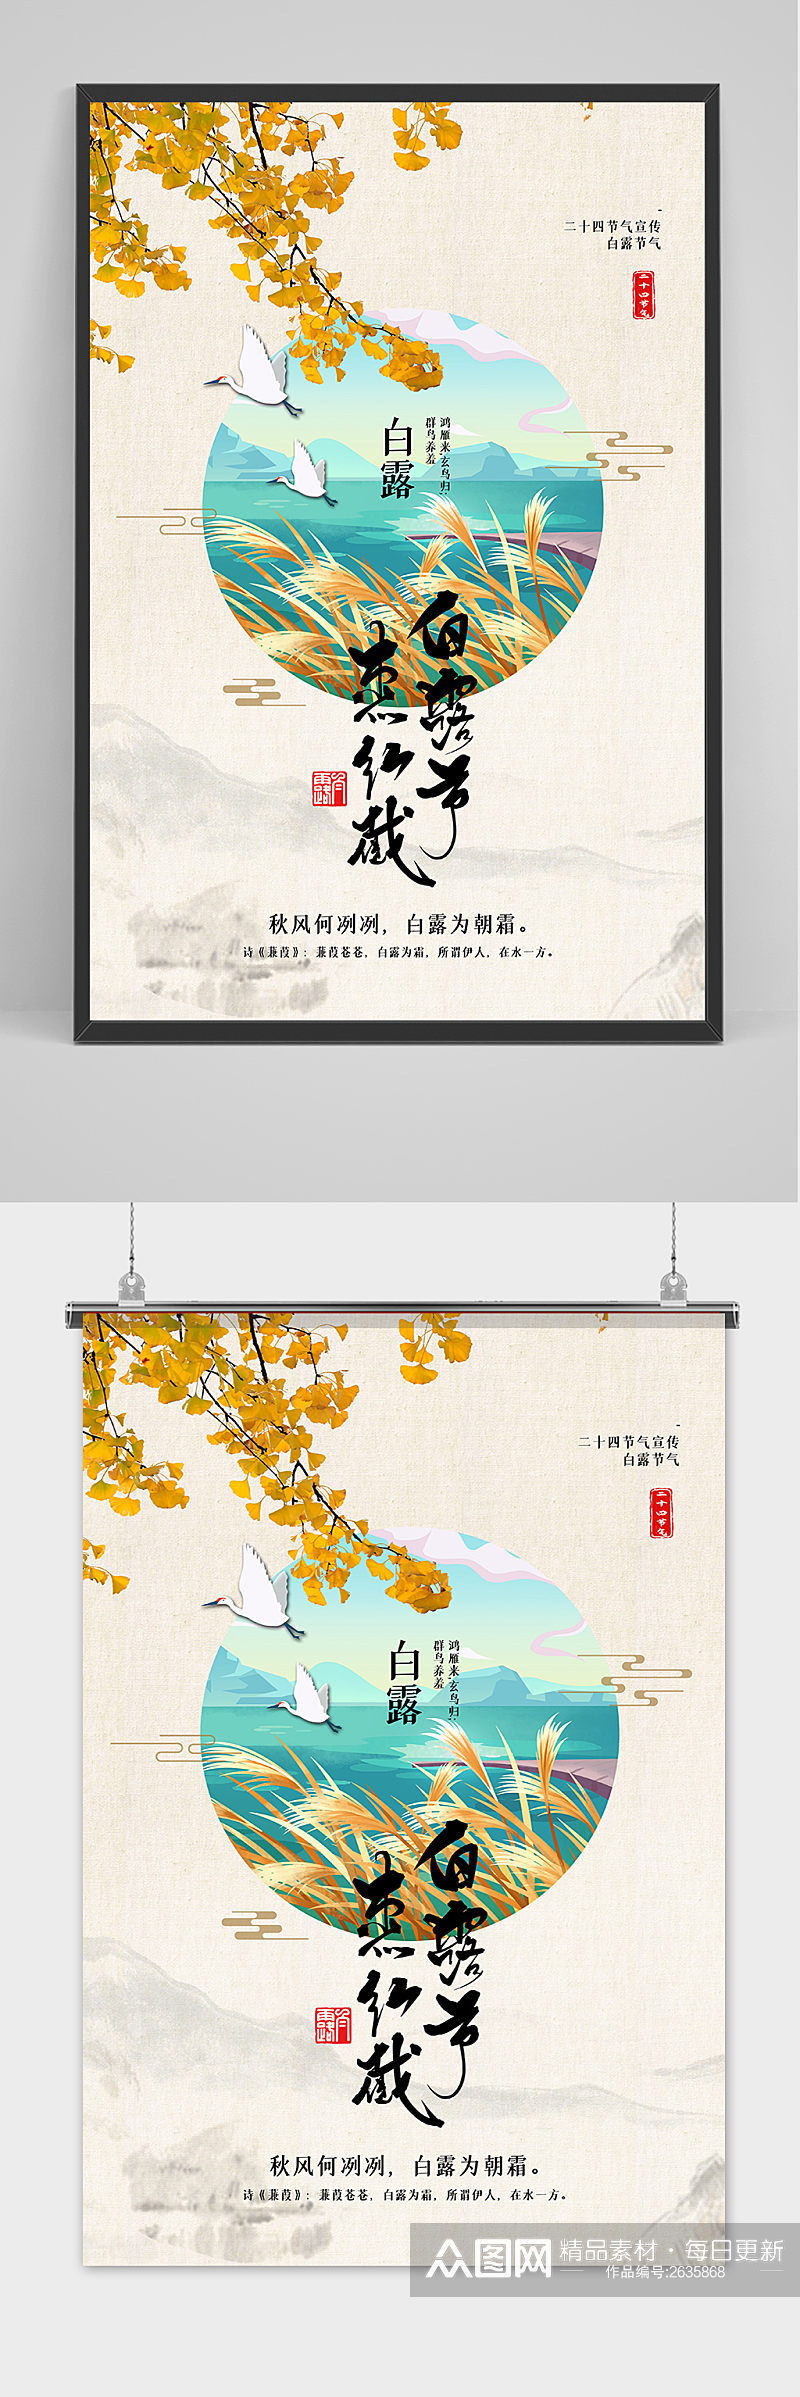 清新唯美中国传统24节气白露节海报素材